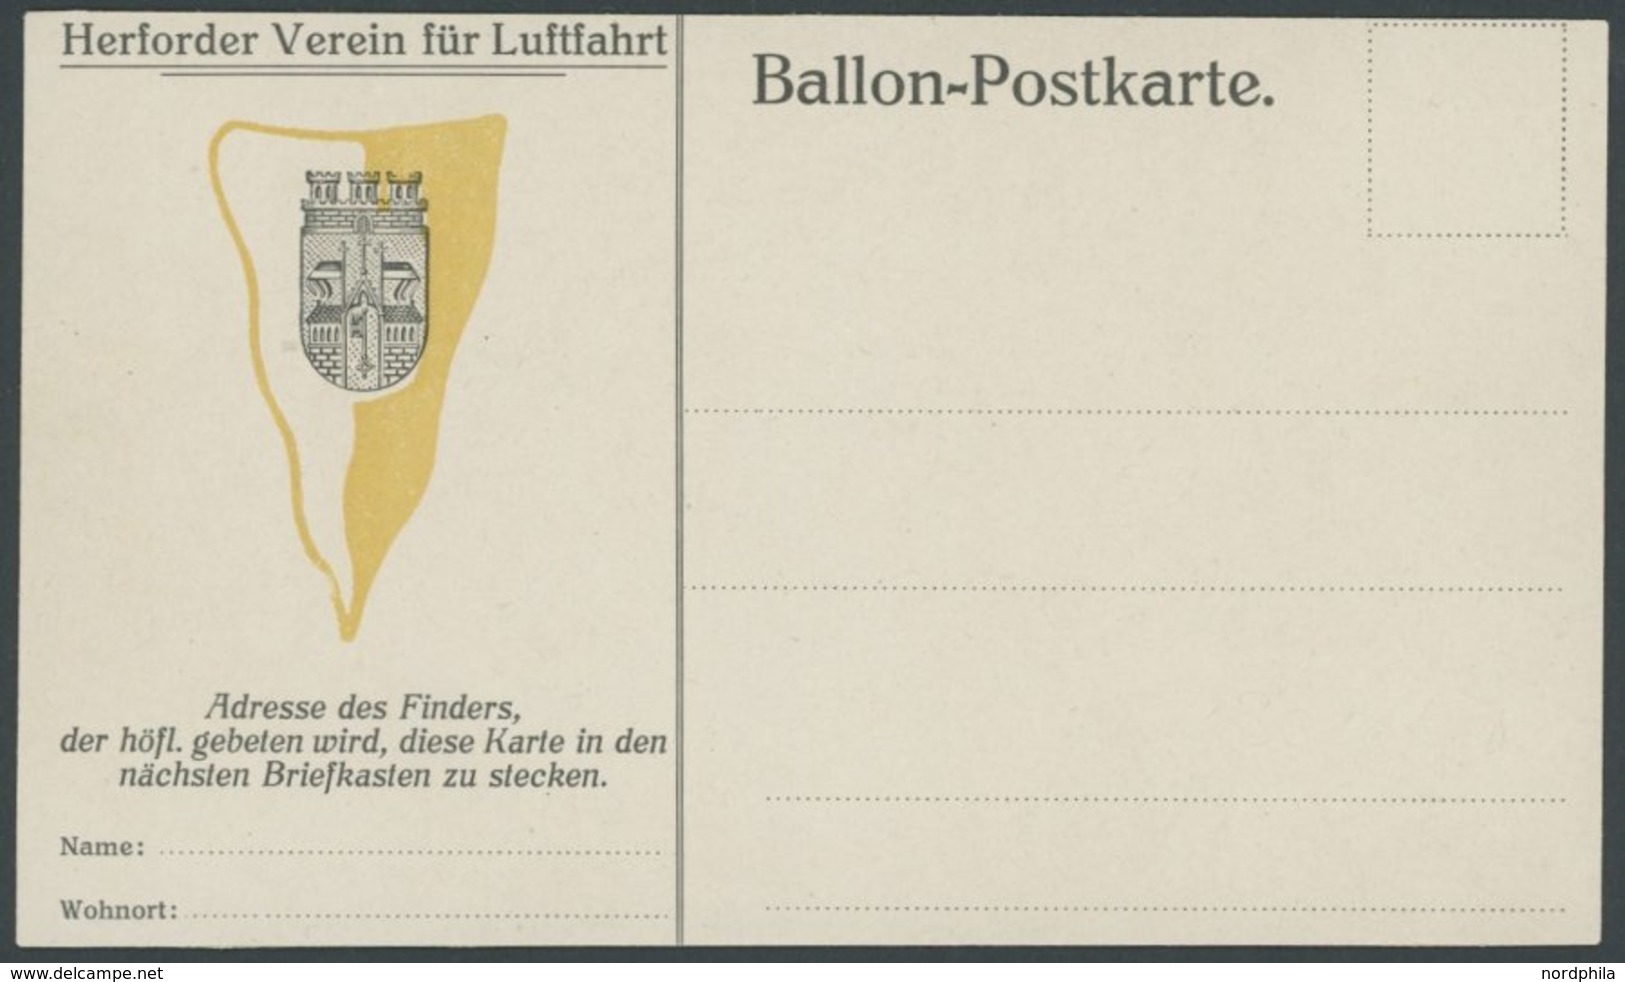 BALLON-FAHRTEN 1897-1916 1911/2, HERFORDER VEREIN FÜR LUFTFAHRT, Ungebrauchte Ballon-Finderkarte, Karte Oben Waagerecht  - Airships